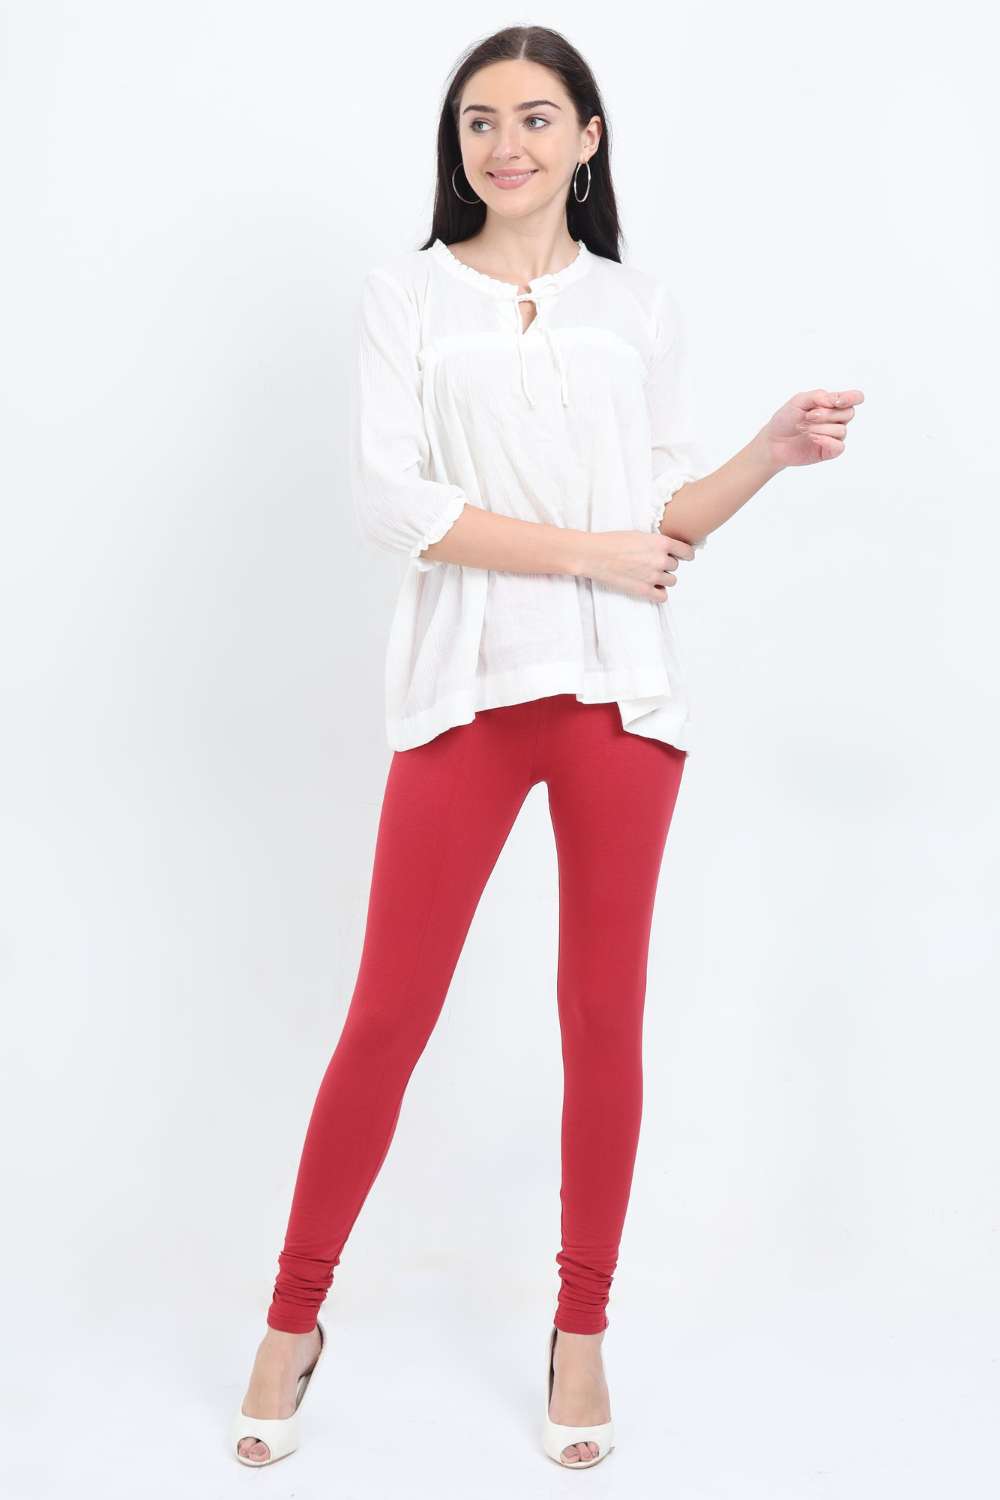 Women's Cotton Lycra Apple Red Full length legging | sandgrouse